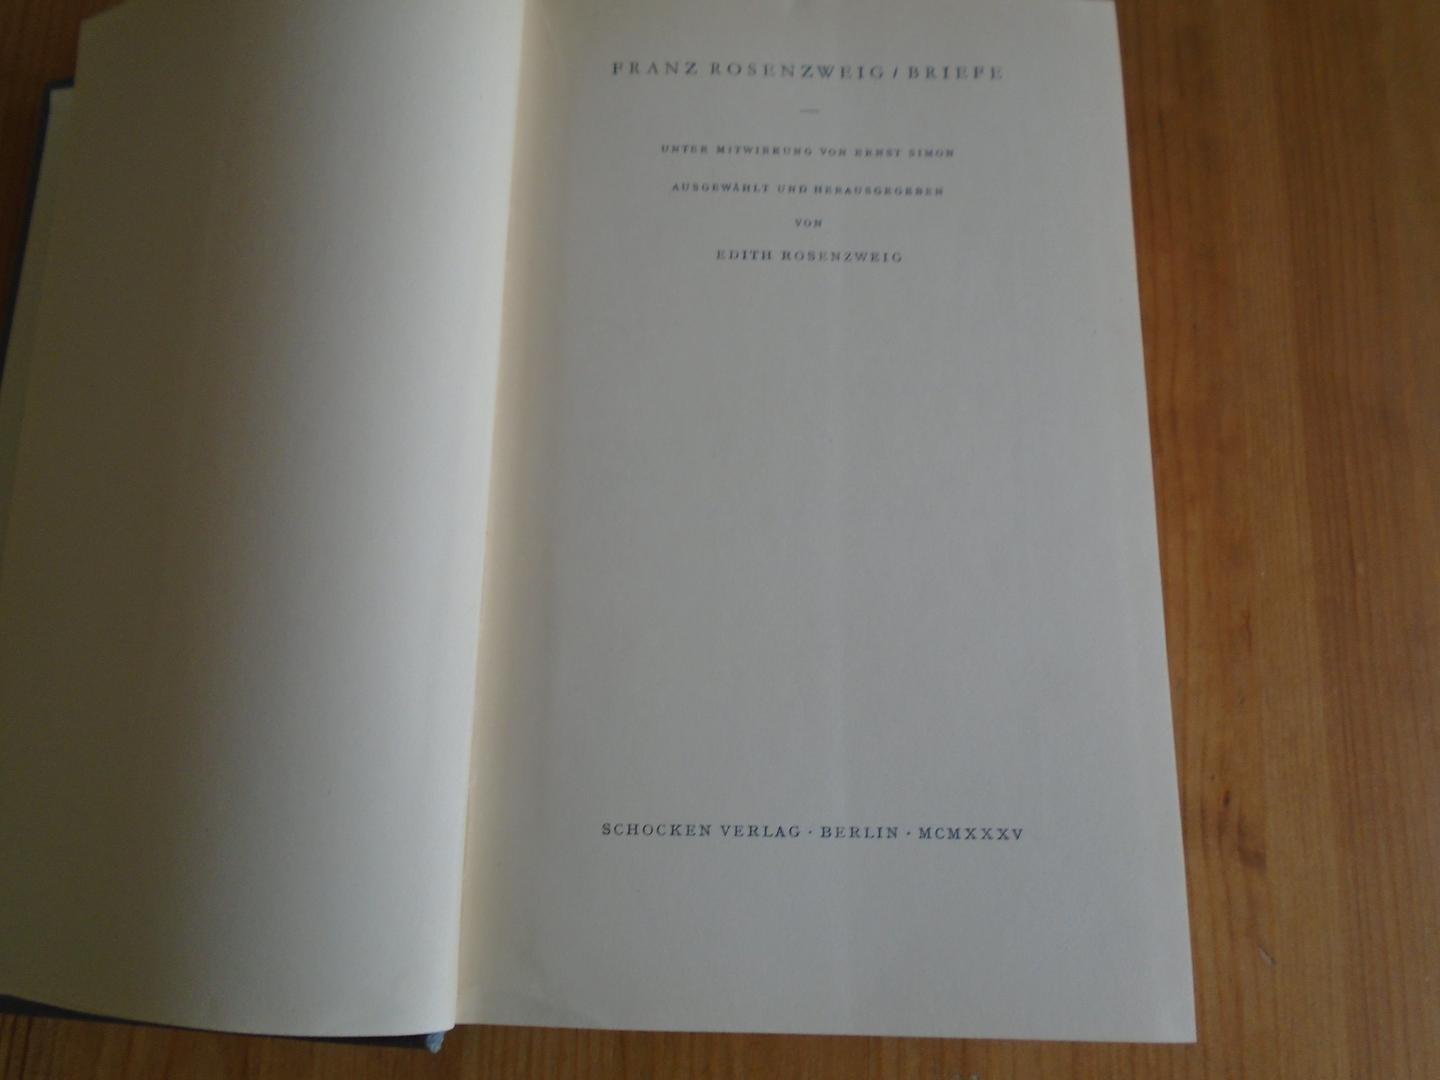 Rosenzweig, Franz - Briefe. Unter Mitwerkung von Ernst Simon. Ausgewählt und herausgegeben von Edith Rosenzweig